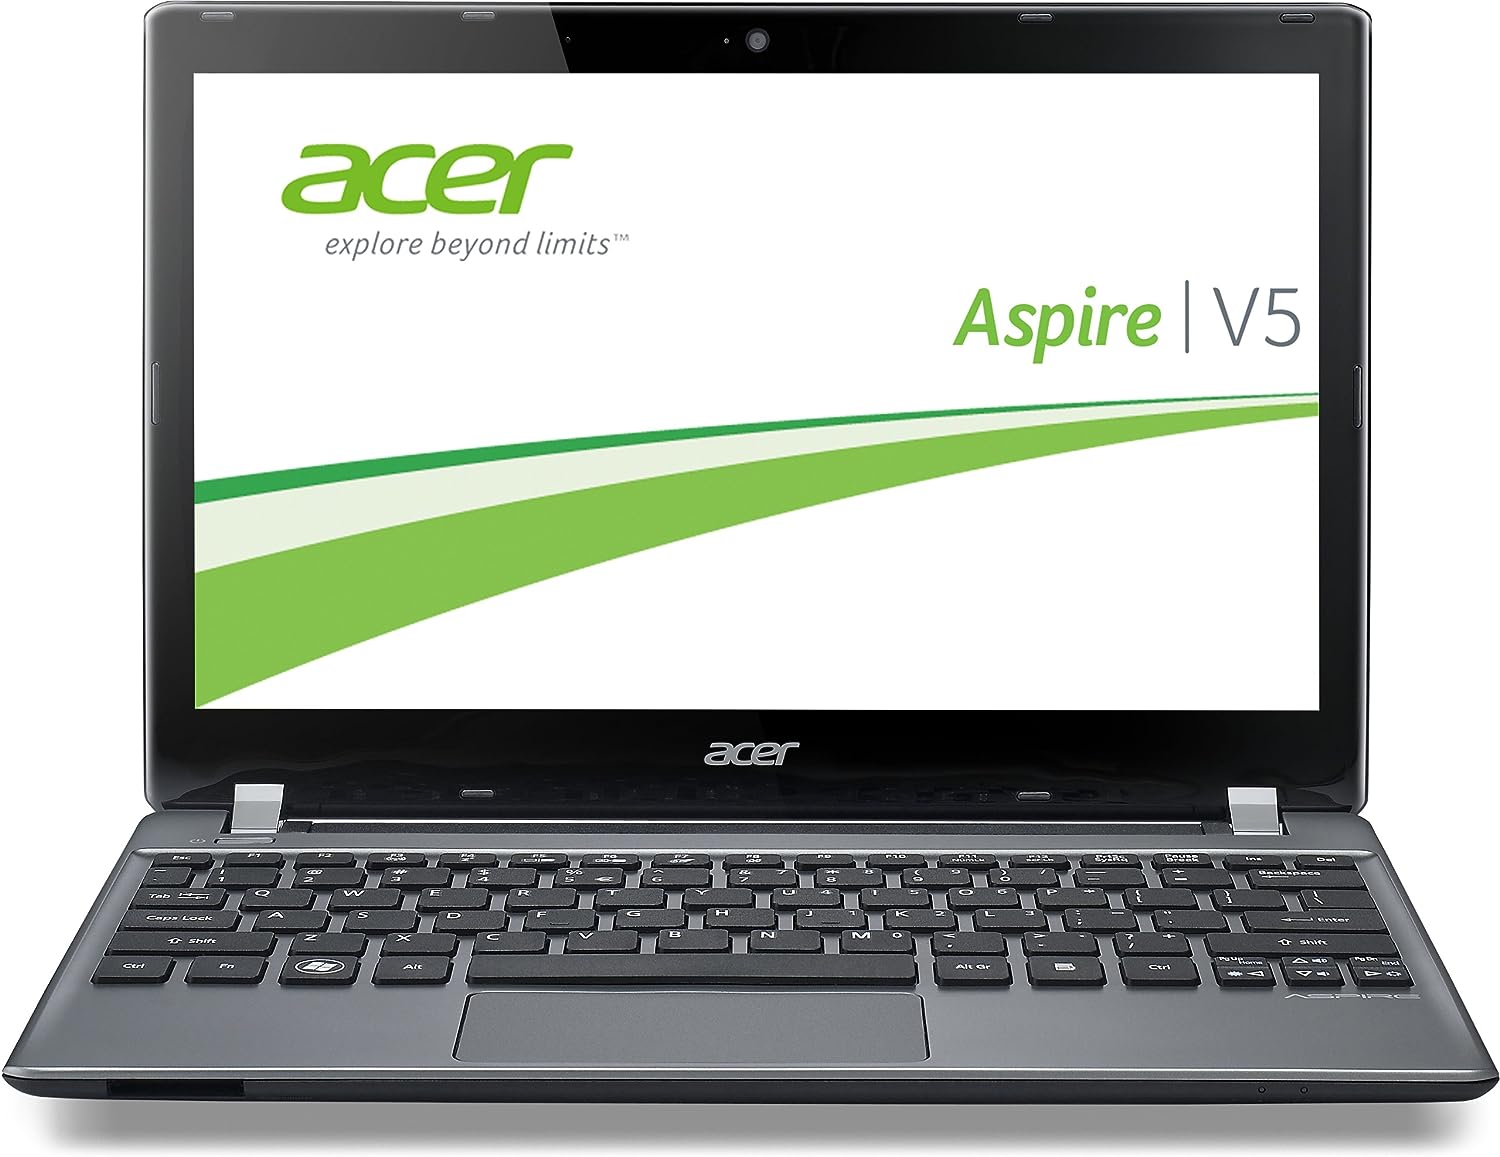 Acer Aspire V5-573PG Notebook